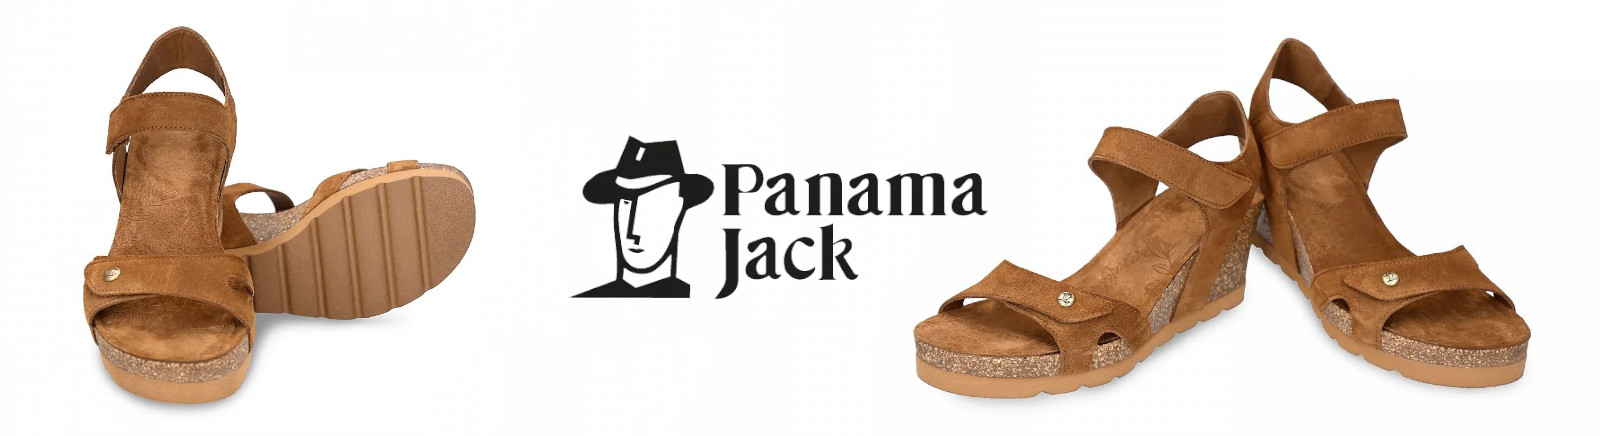 Prange: Panama Jack Schnürschuhe für Damen online shoppen